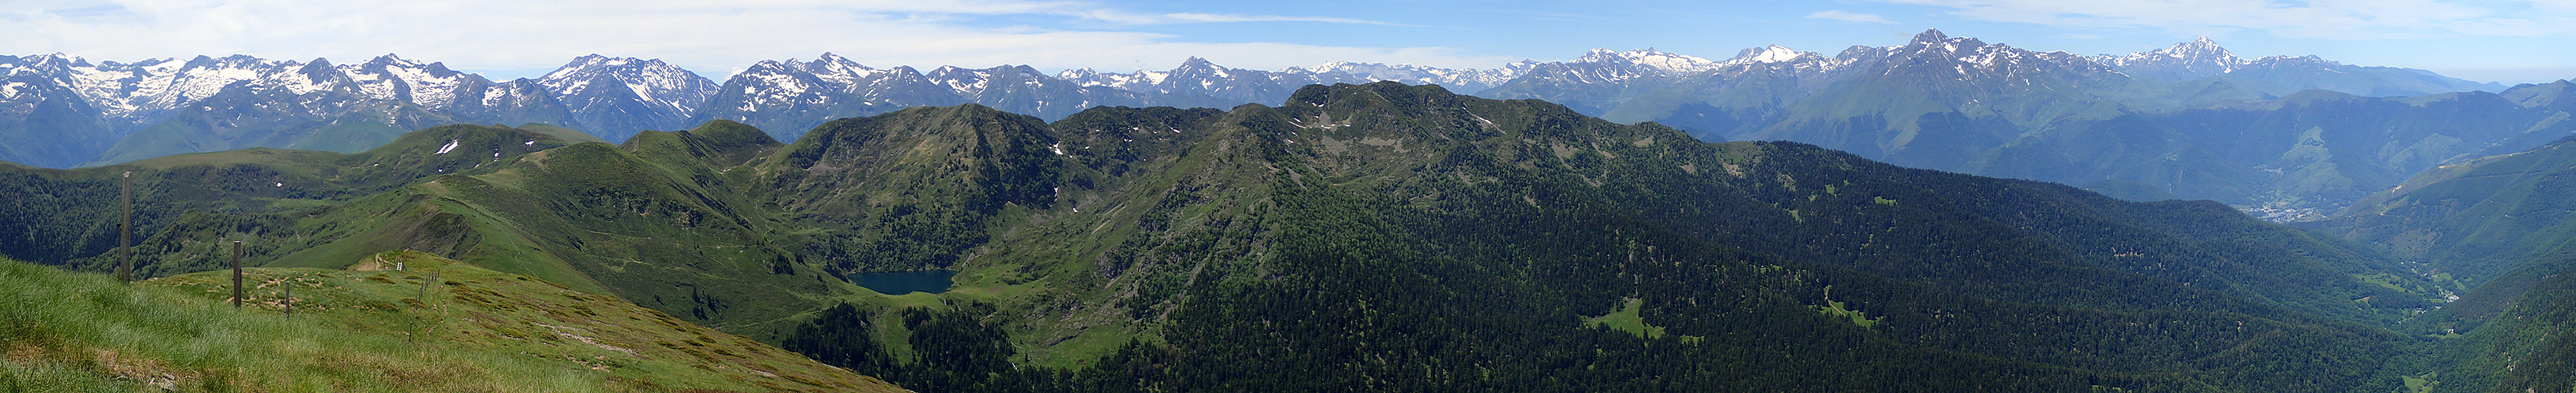 Le Mont Né - Panorama depuis le sommet du Mont Né, avec le lac de Bareilles et le Pic du Midi